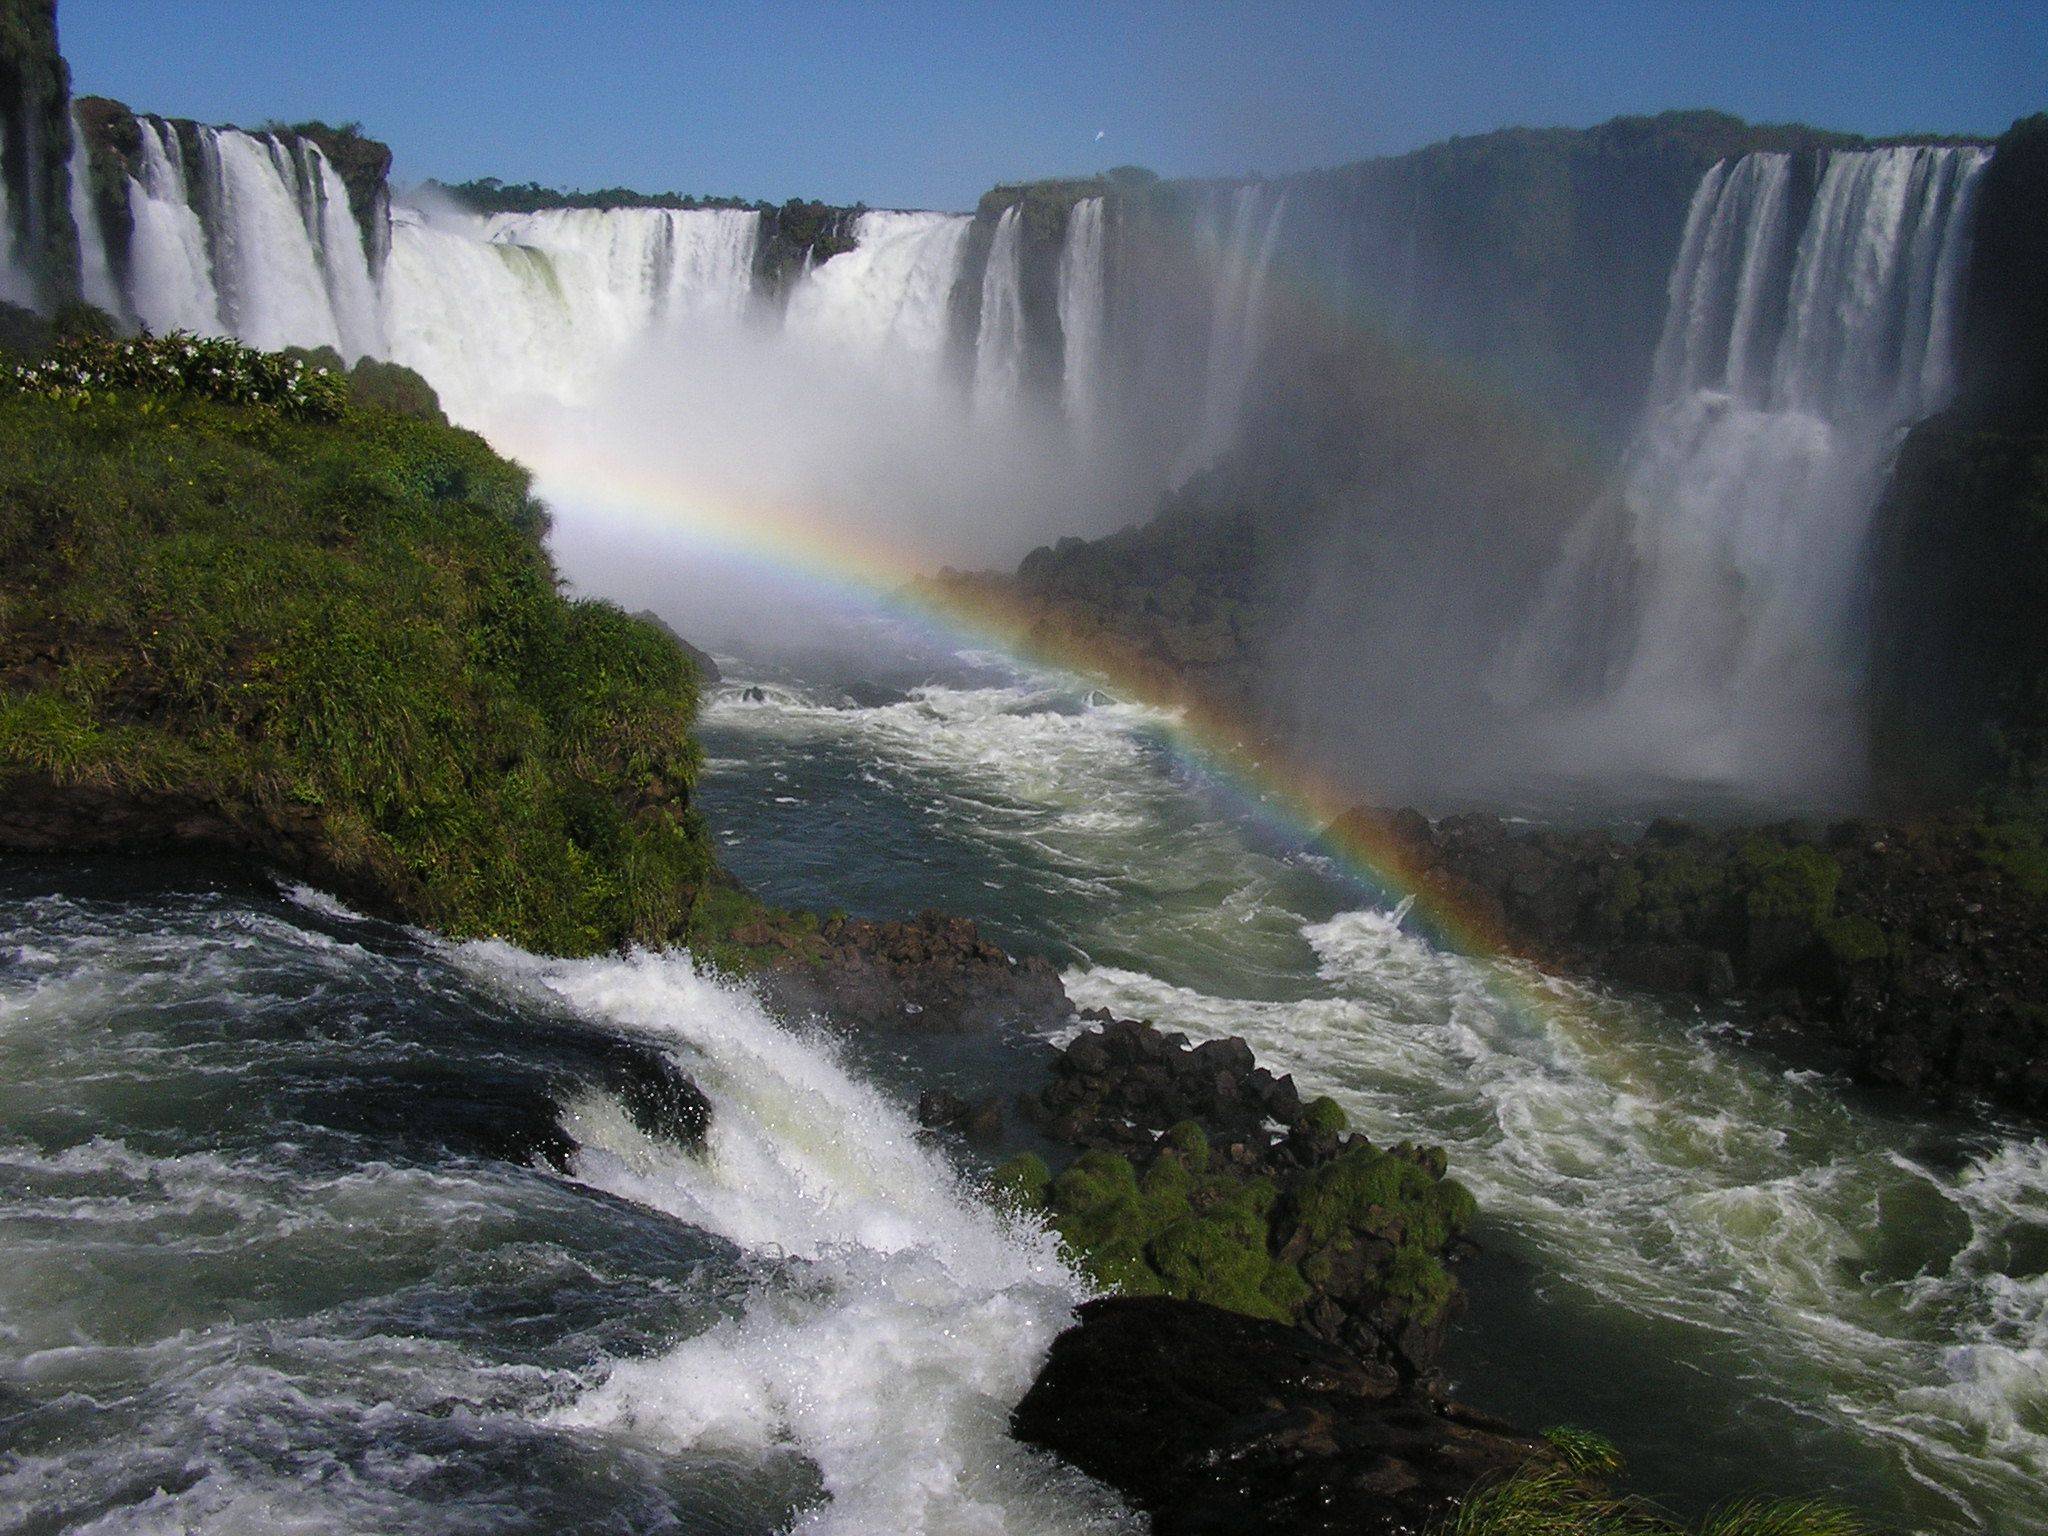 Les chutes d'Iguaçu du côté brésilien